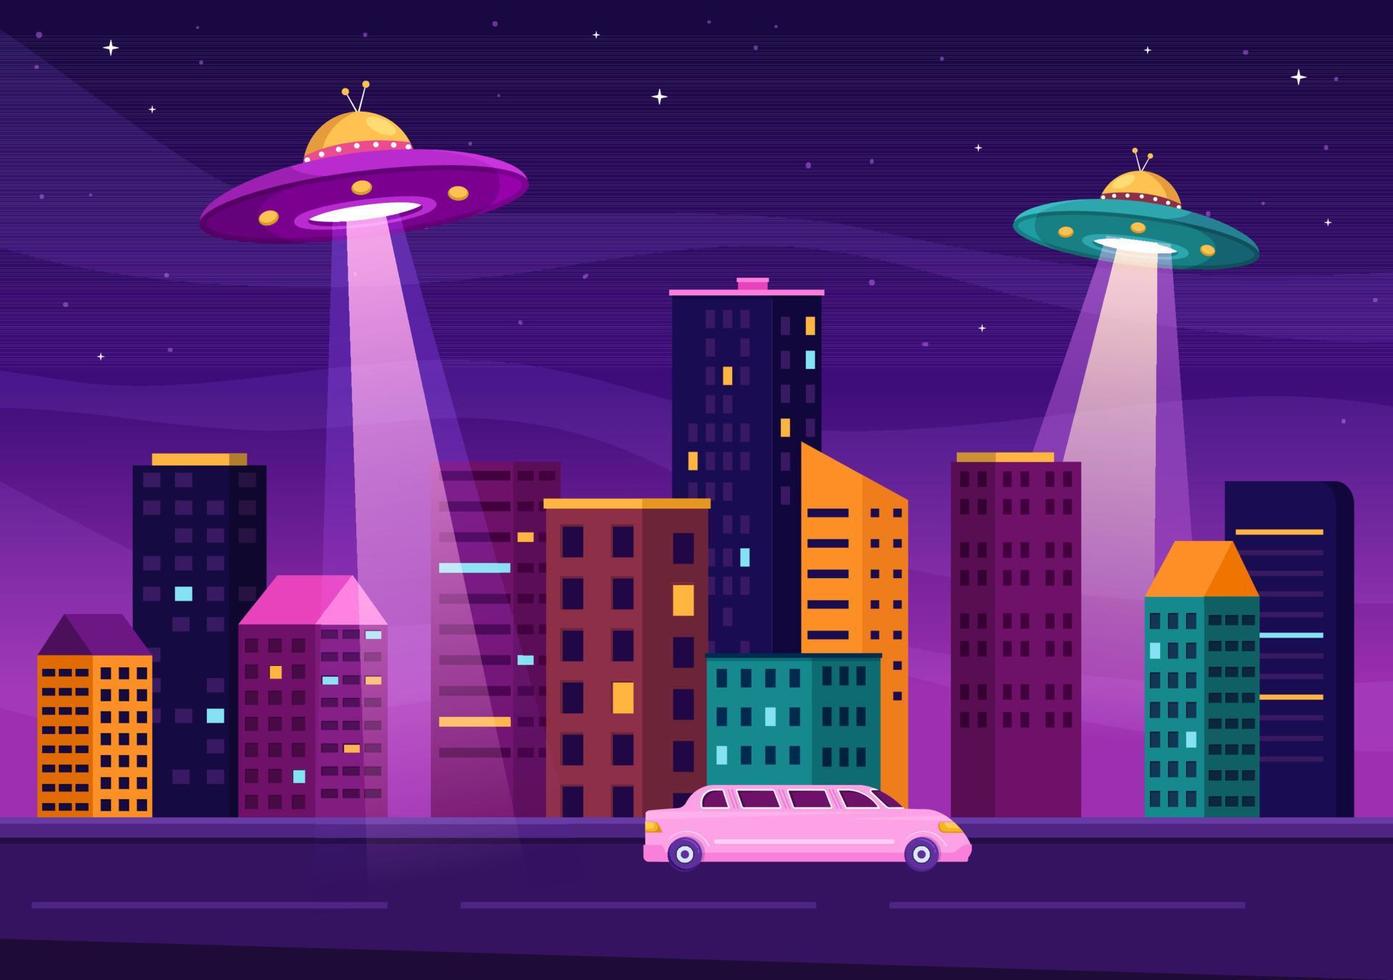 nave espacial voladora ovni con rayos de luz en el cielo vista nocturna de la ciudad y extraterrestre en ilustración de plantillas dibujadas a mano de dibujos animados planos vector